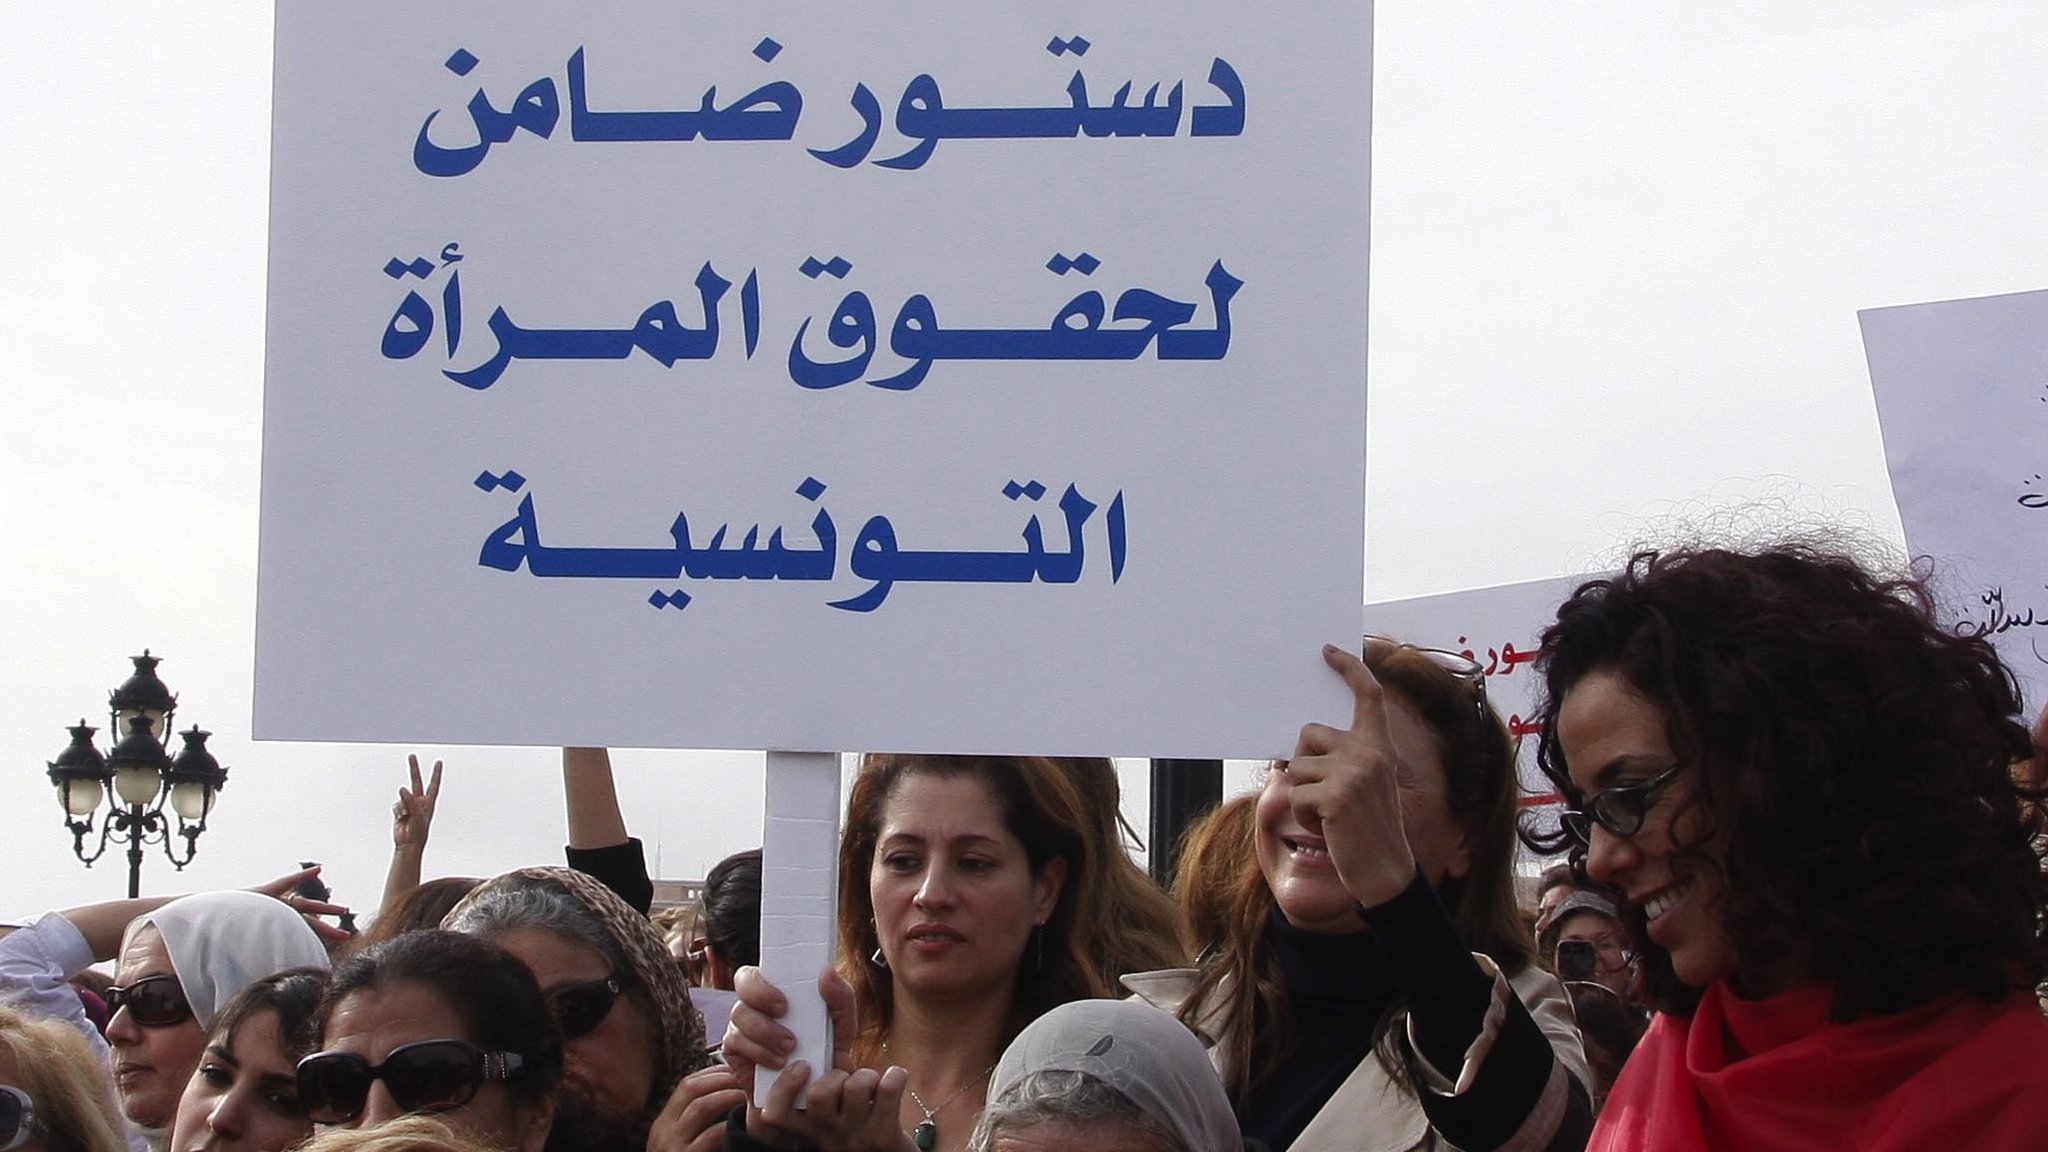 اعتداء مستثمر إيطالي على عاملات تونسيات يثير غضباً واسعاً في البلاد